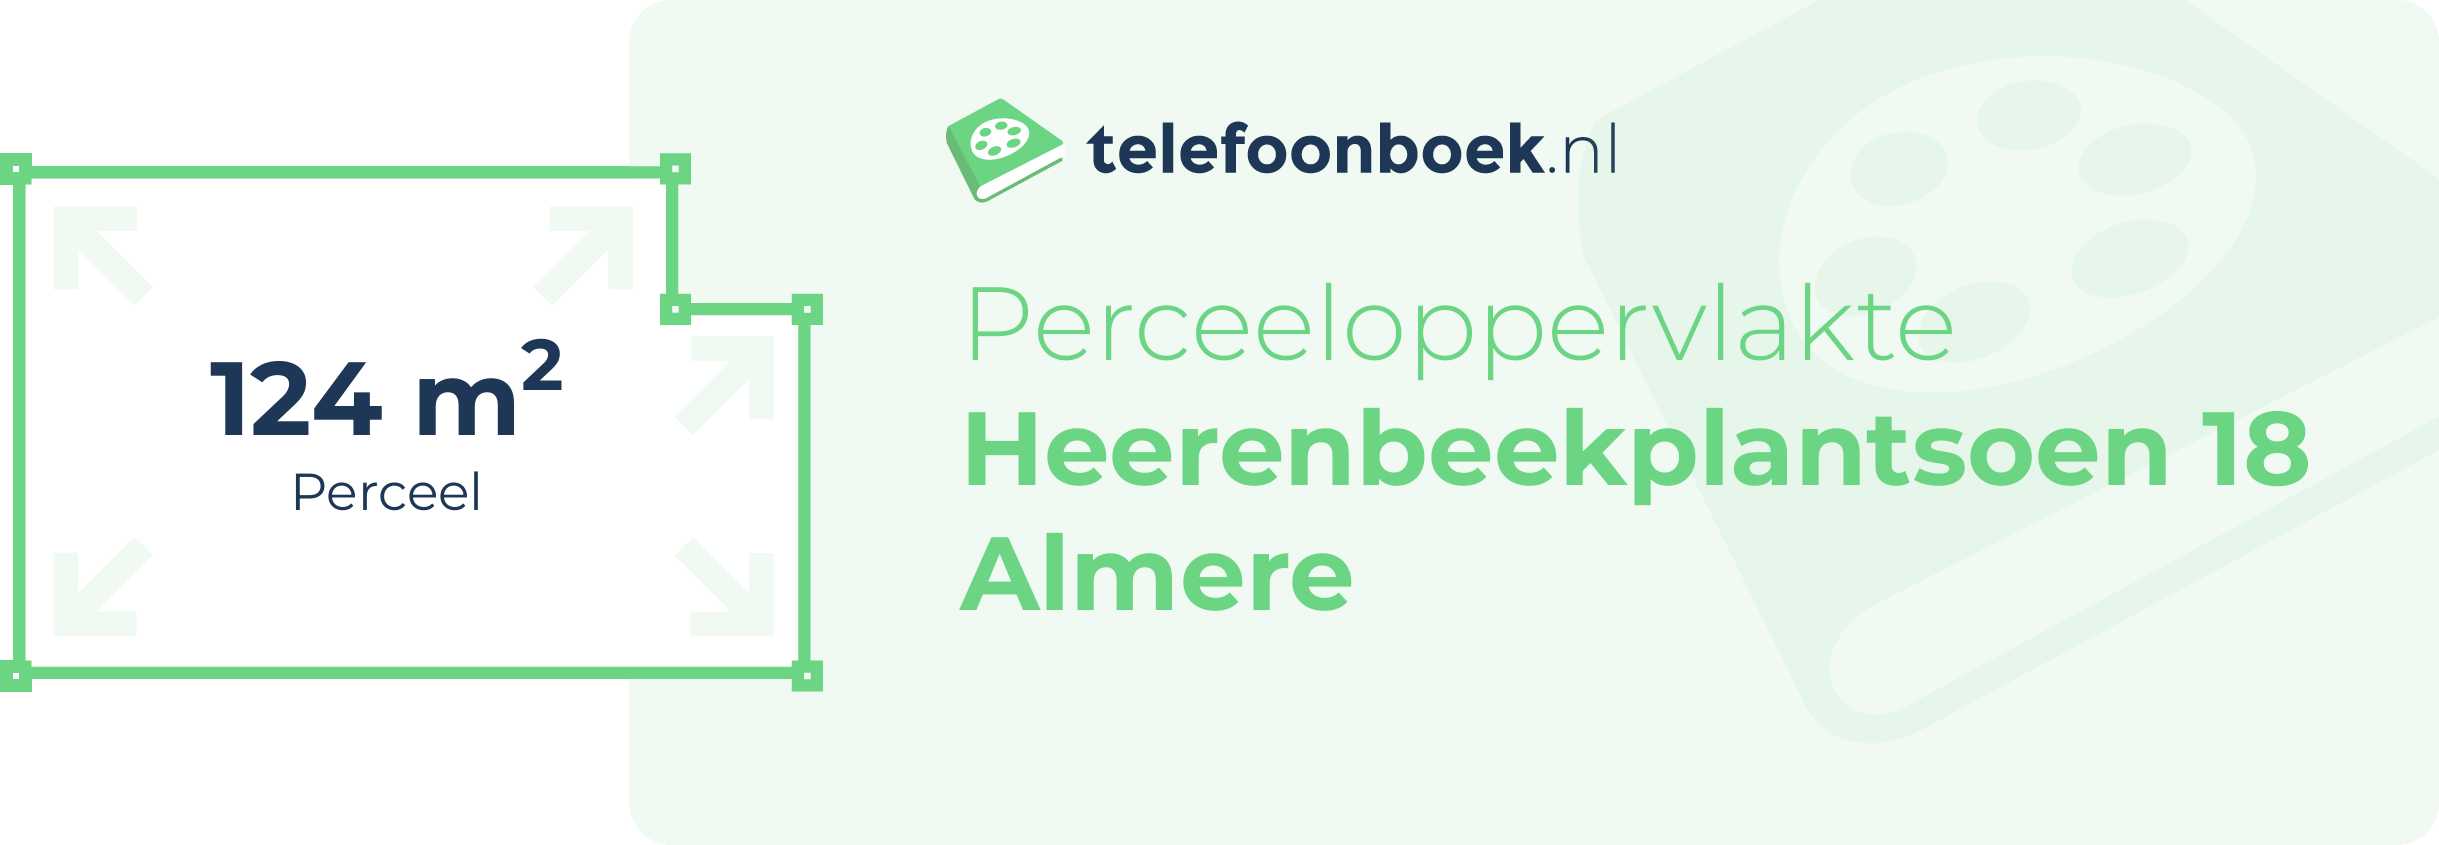 Perceeloppervlakte Heerenbeekplantsoen 18 Almere